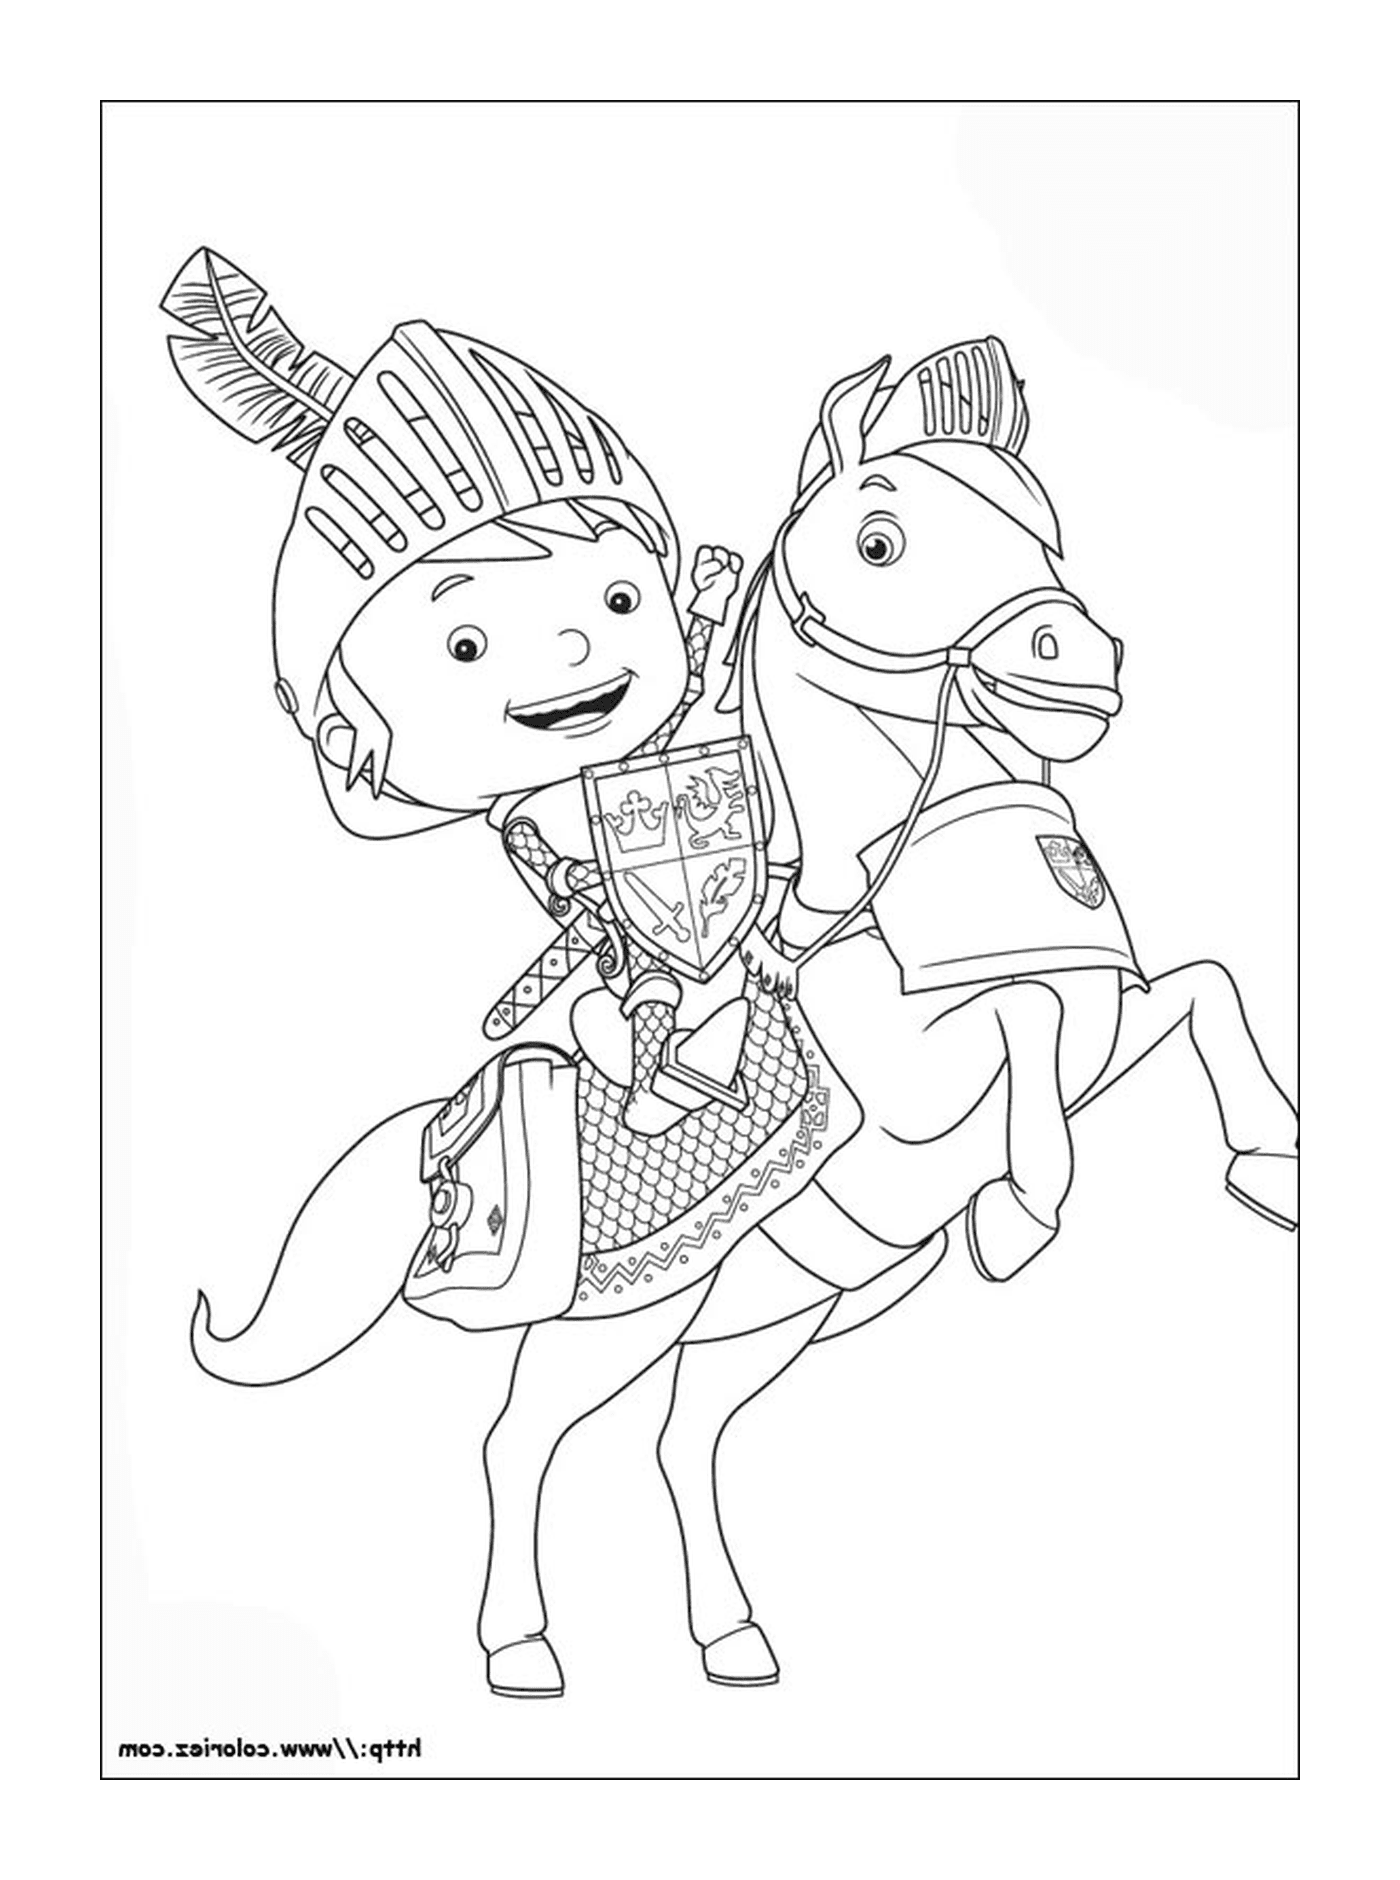  A boy on horseback 